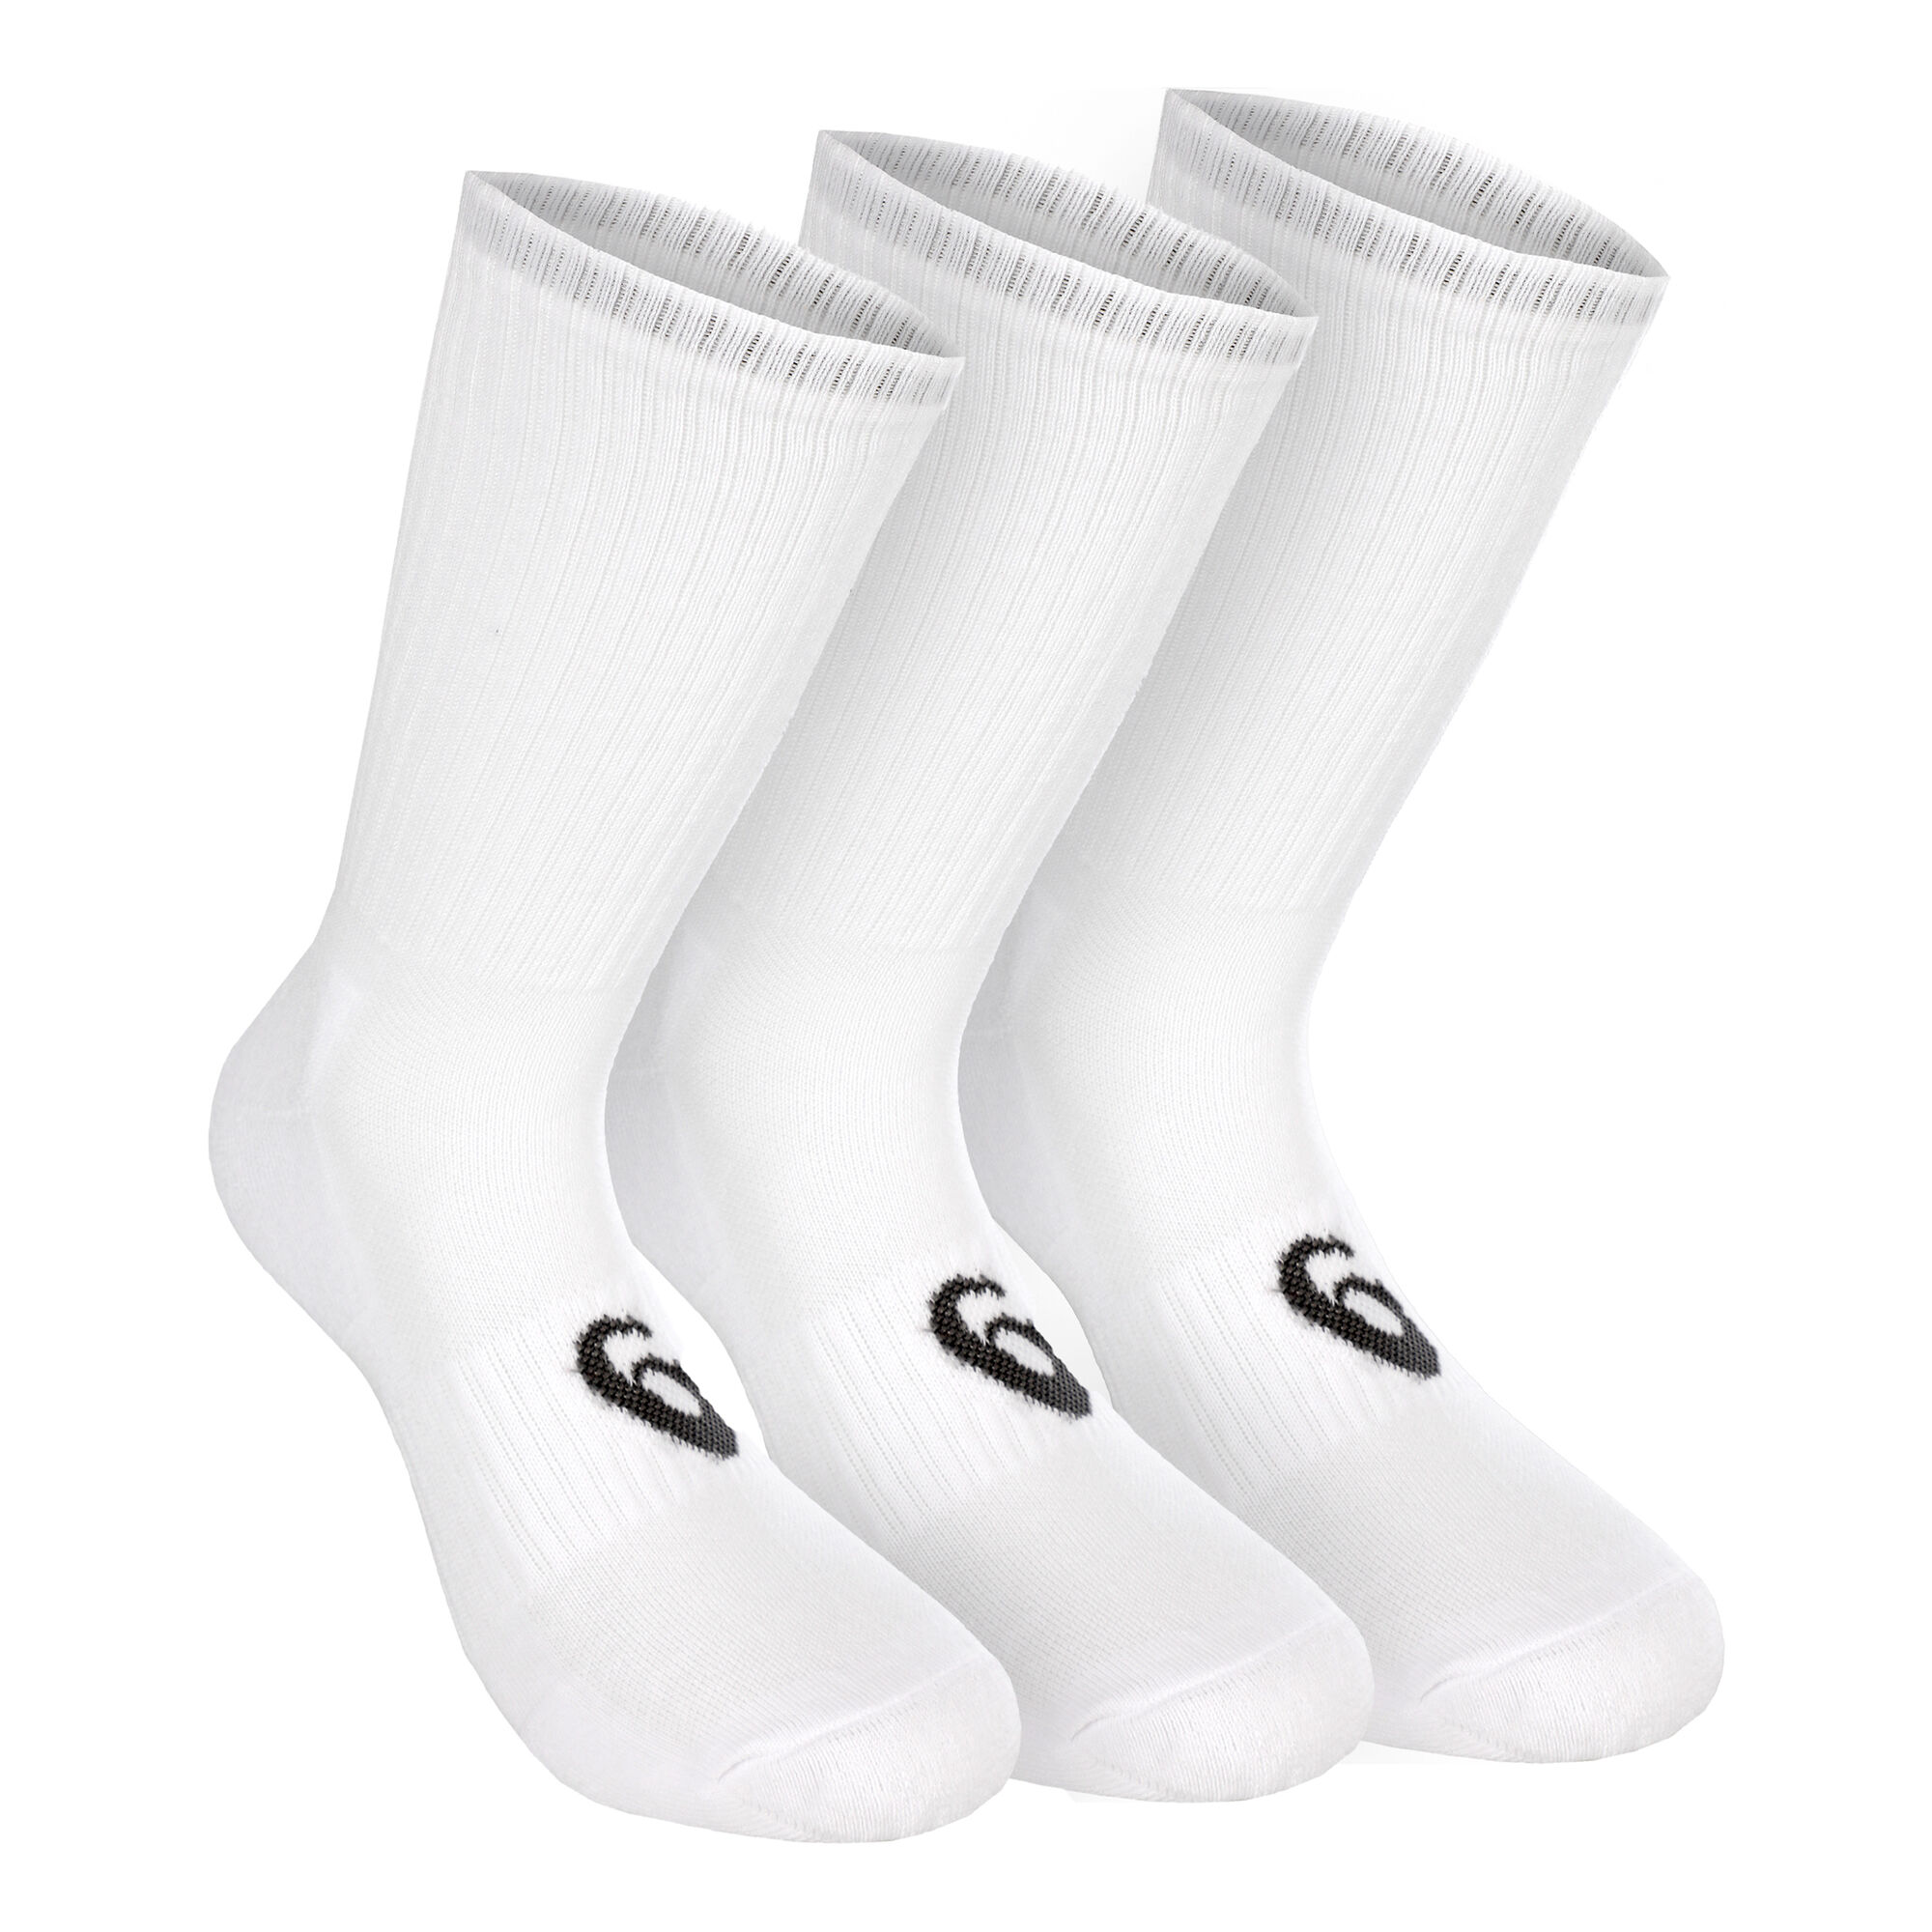 Buy ASICS Crew Sports Socks 3 Pack White, Black online | Tennis Point COM